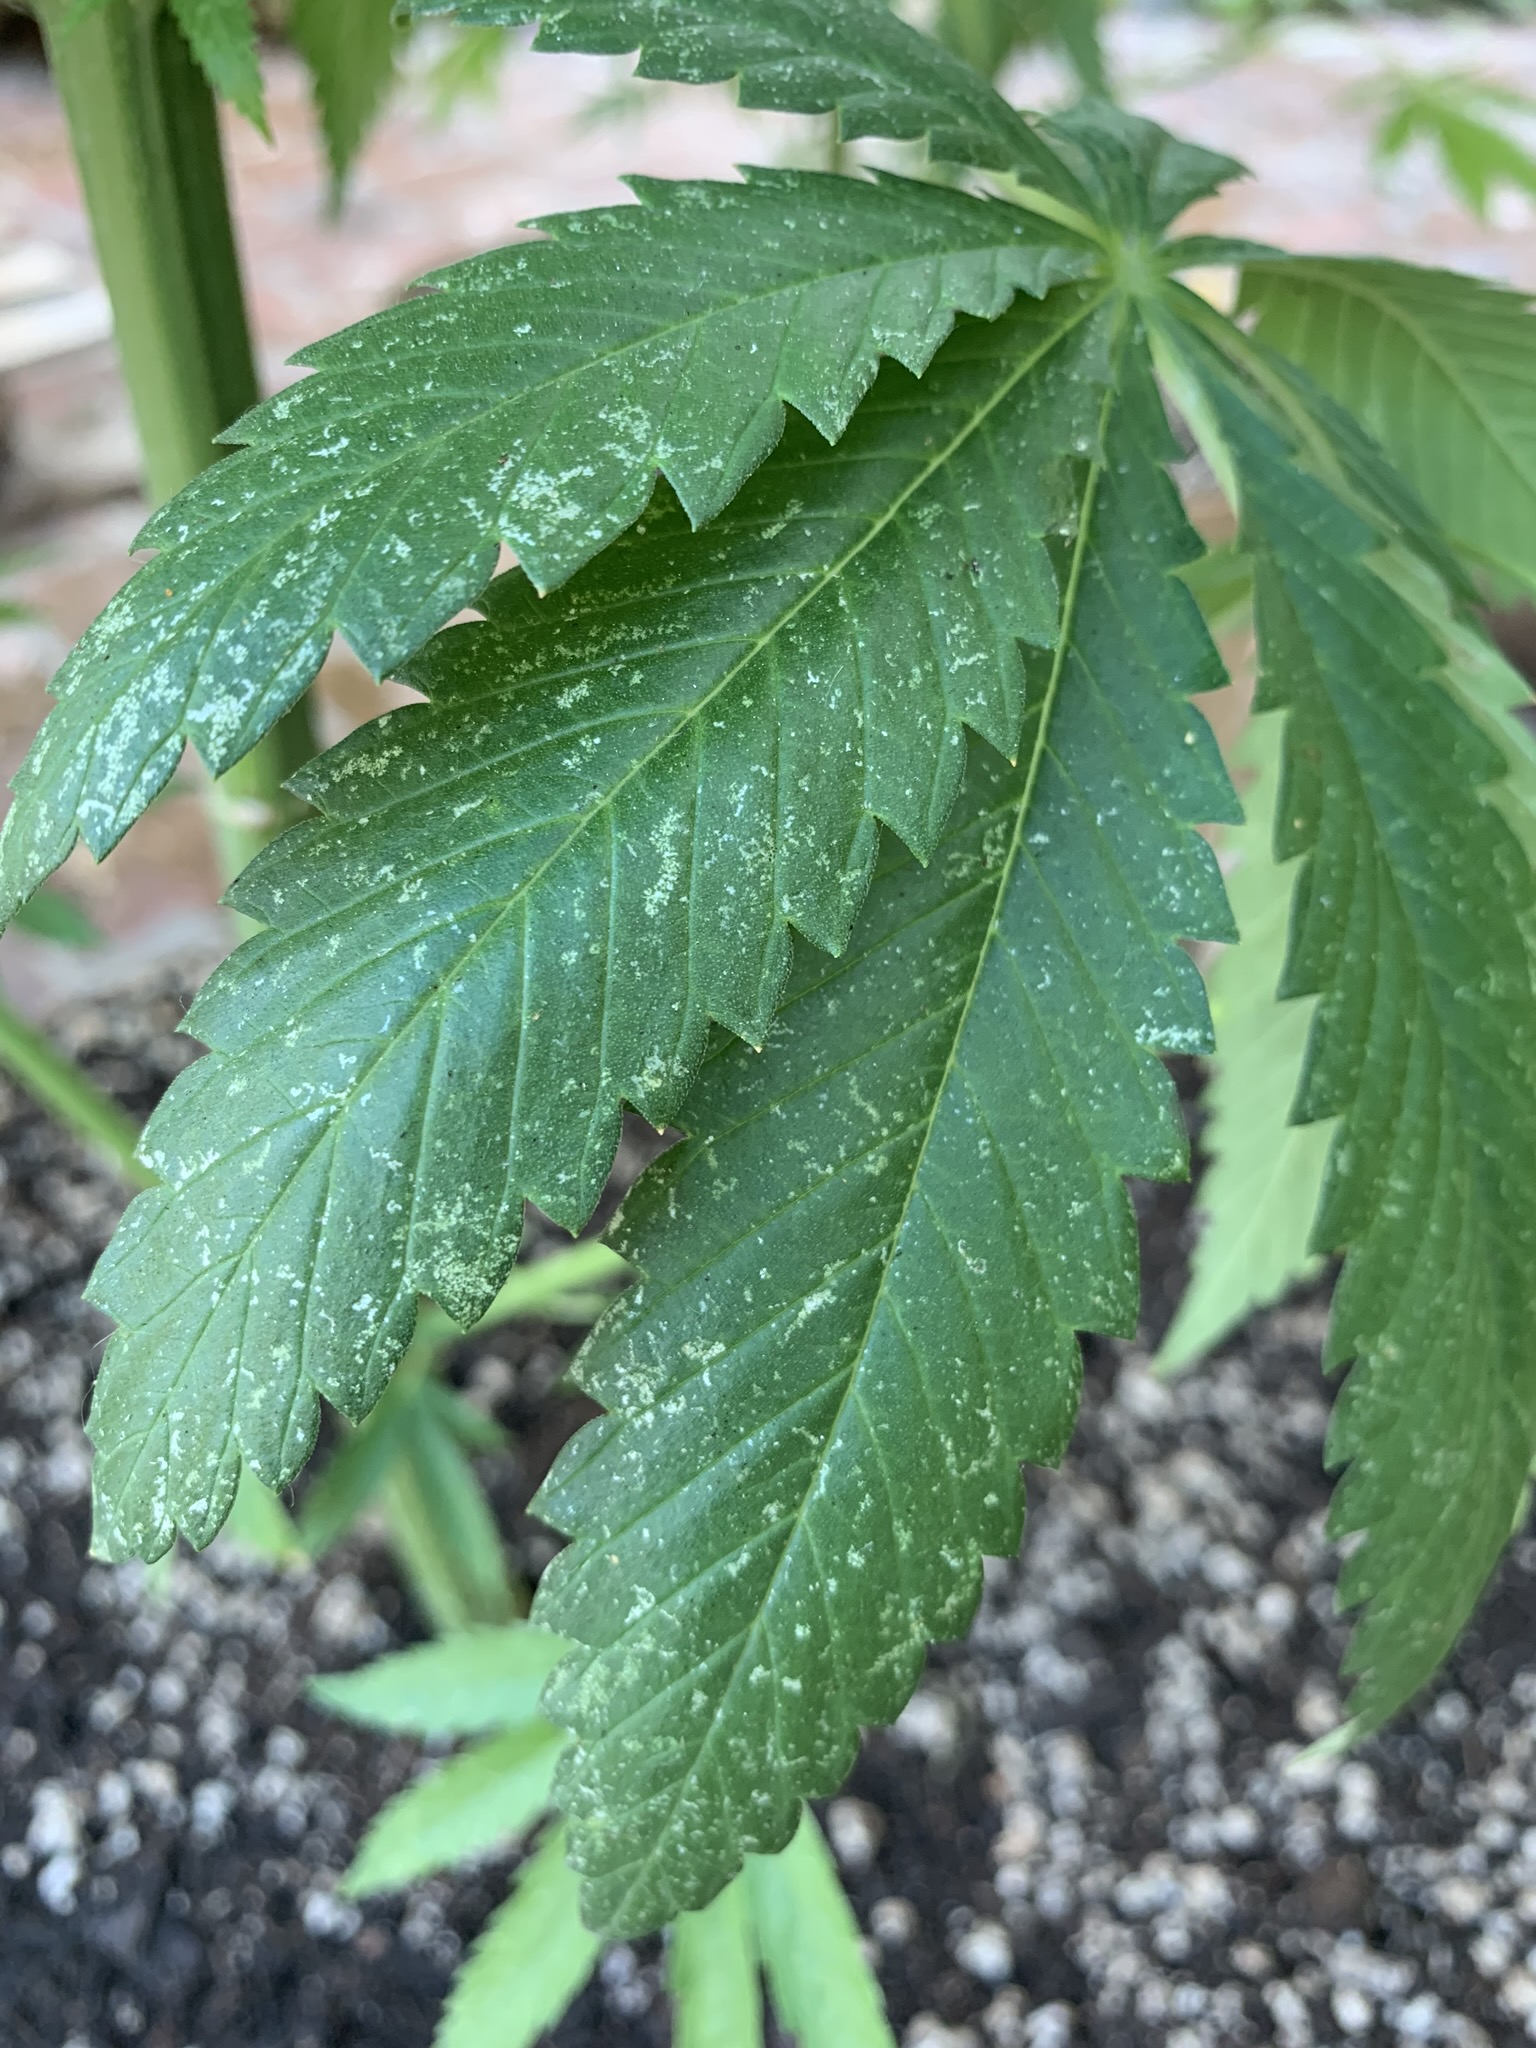 Lowly Moss-Like Plant Seems to Copy Cannabis